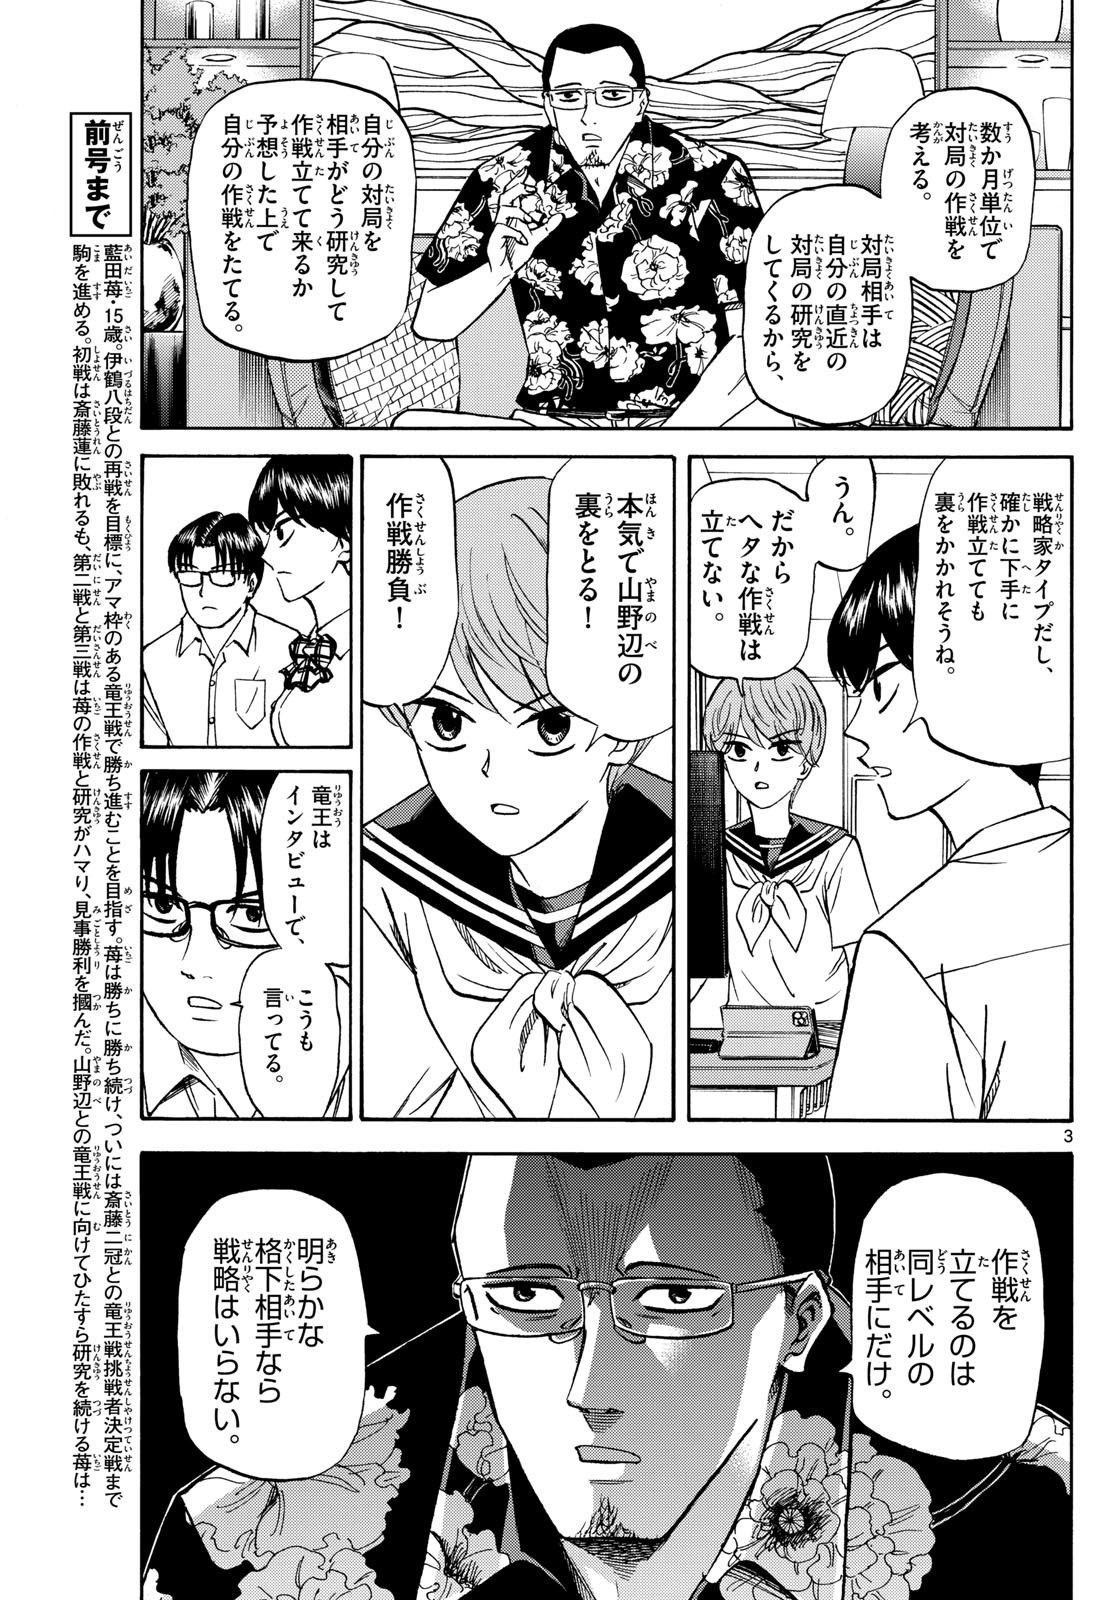 Ryu-to-Ichigo - Chapter 148 - Page 3